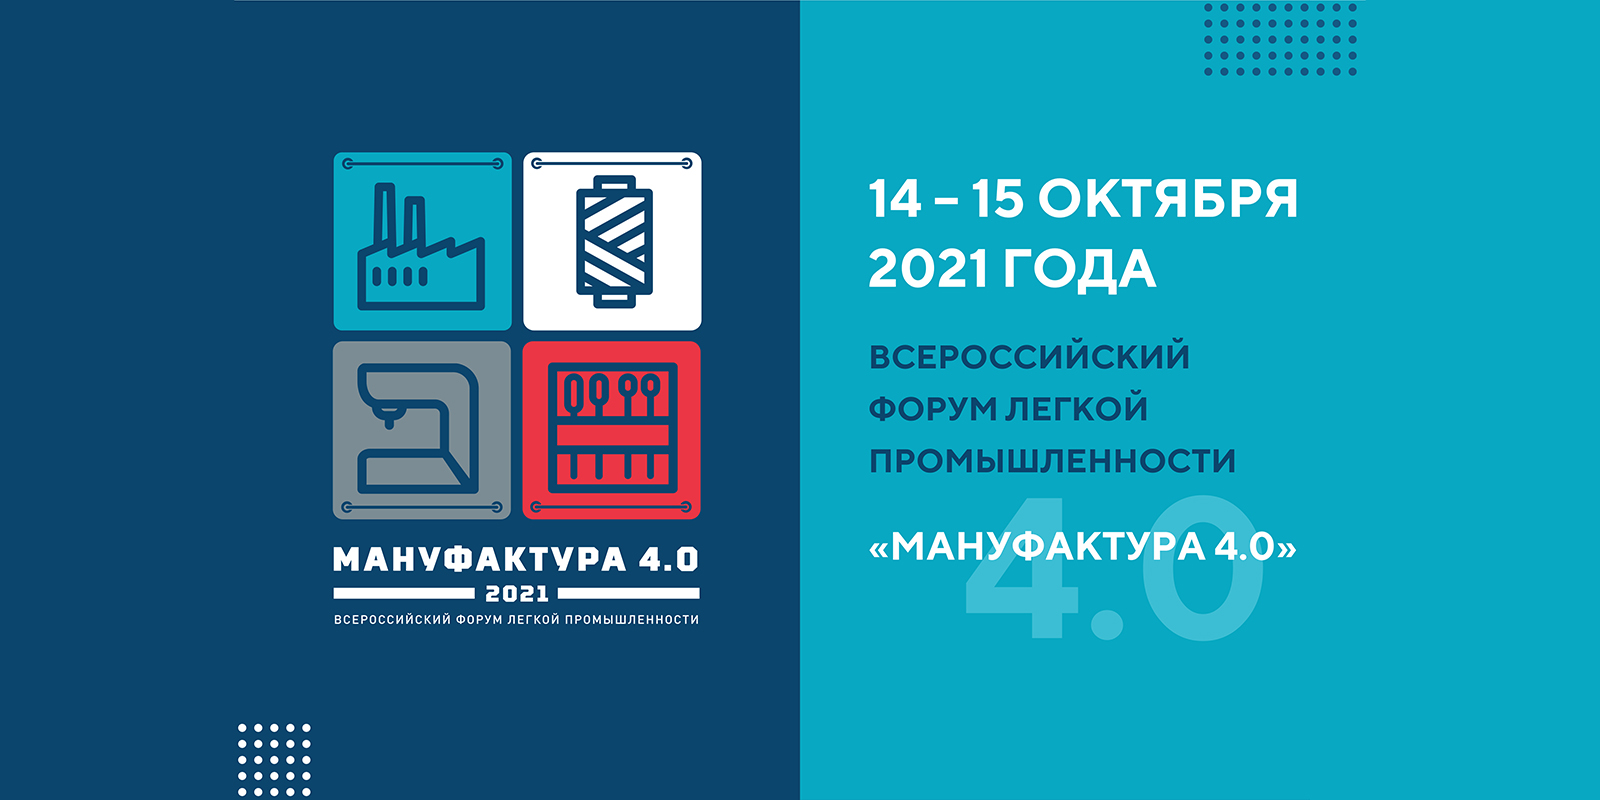 Сформирована деловая программа Всероссийского отраслевого форума легкой промышленности  «Мануфактура 4.0»